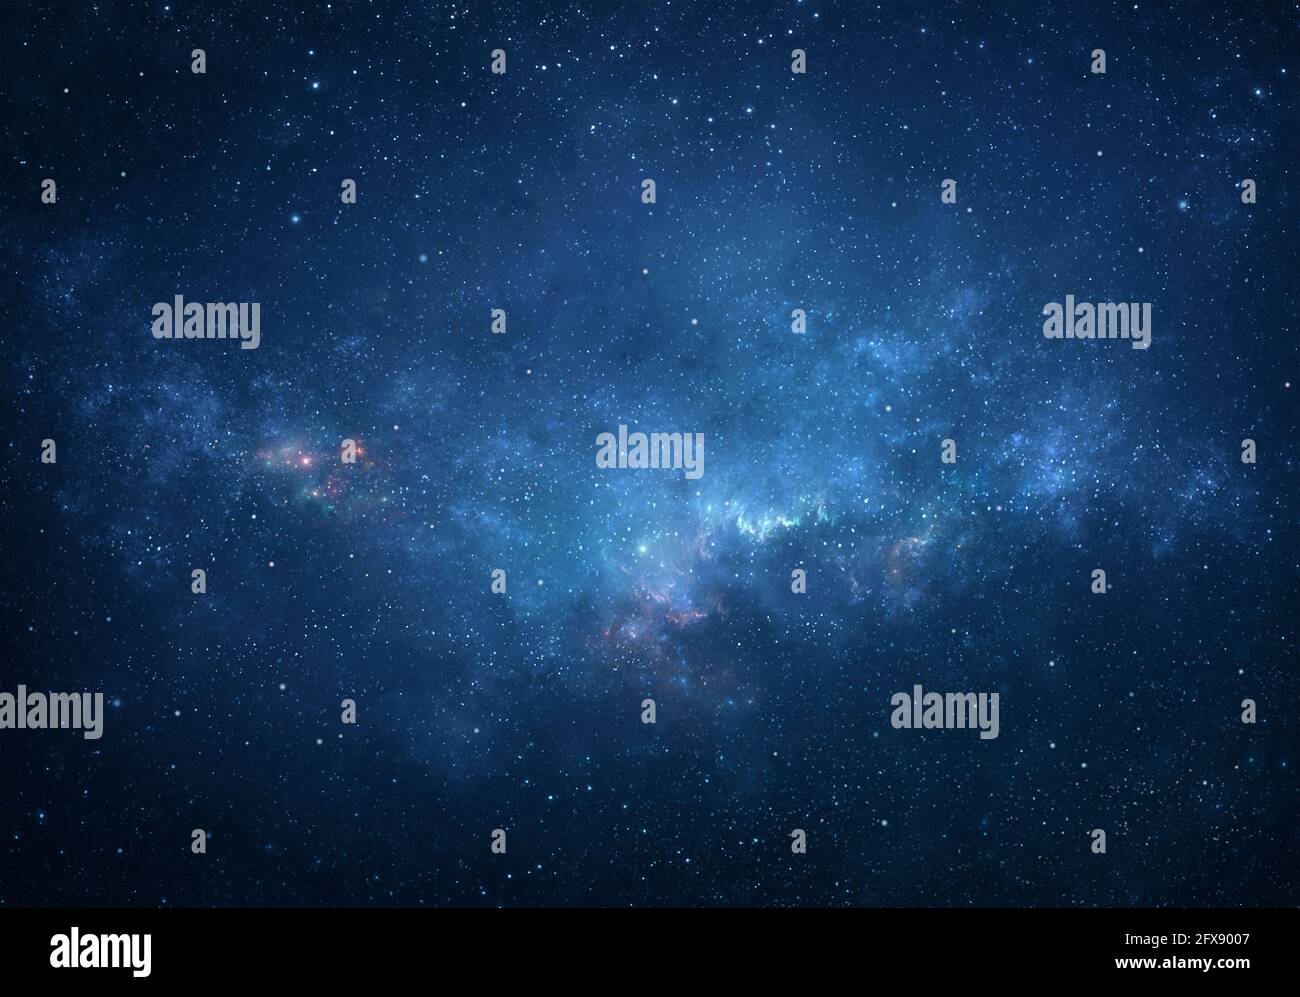 Des groupes d'étoiles qui brillent dans un espace profond. Ciel nocturne, étoiles scintillantes et nébuleuses. Fragment de l'Univers. Banque D'Images